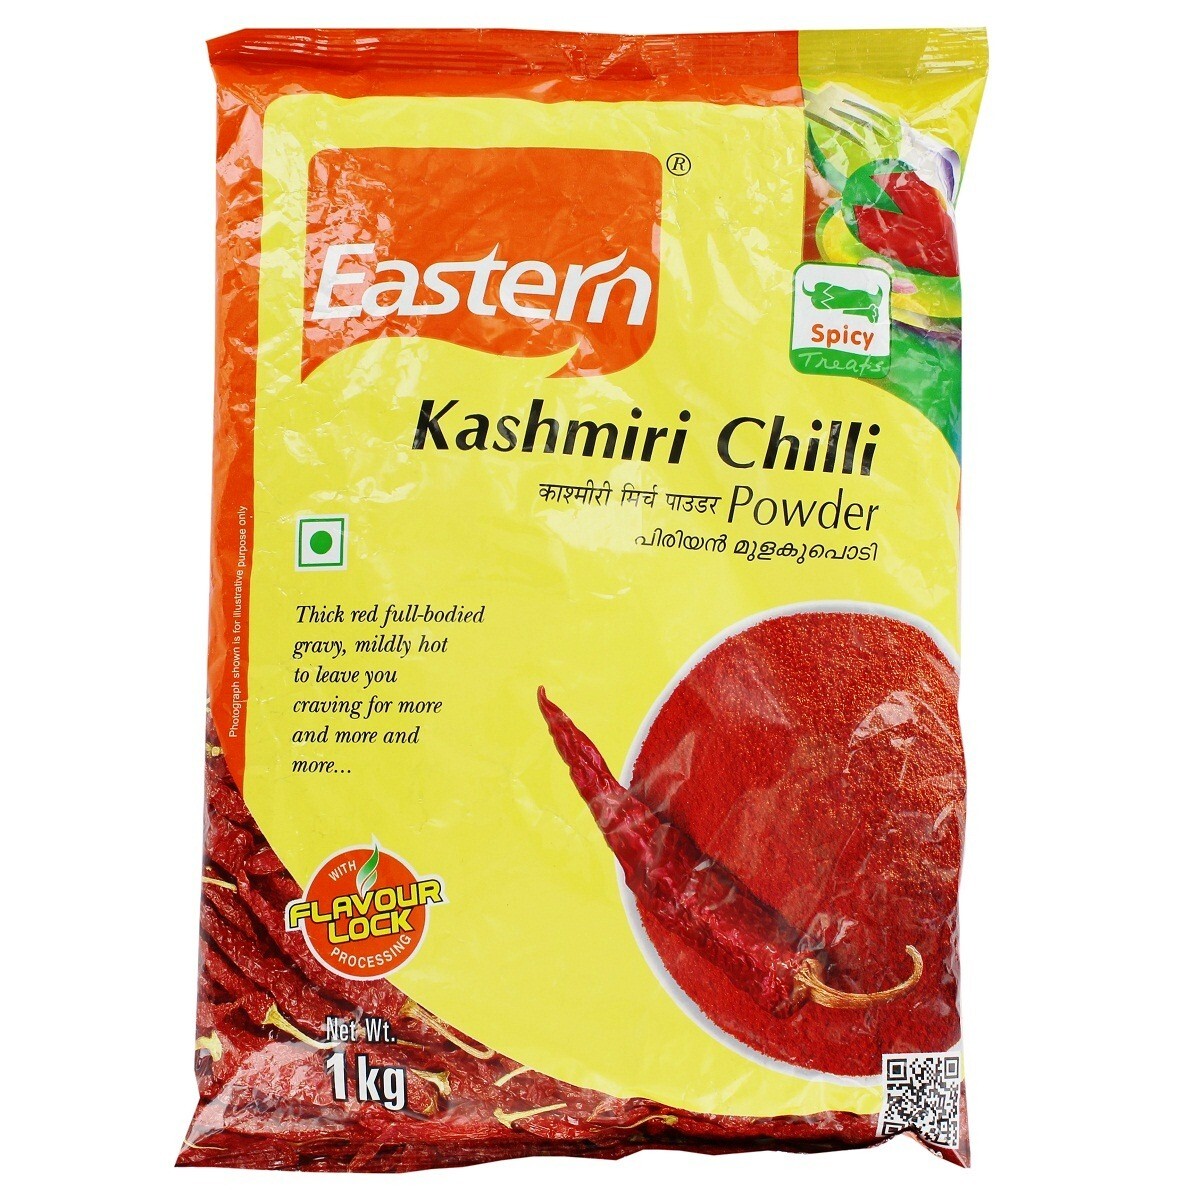 Eastern Kashmiri Chilly Powder 1kg